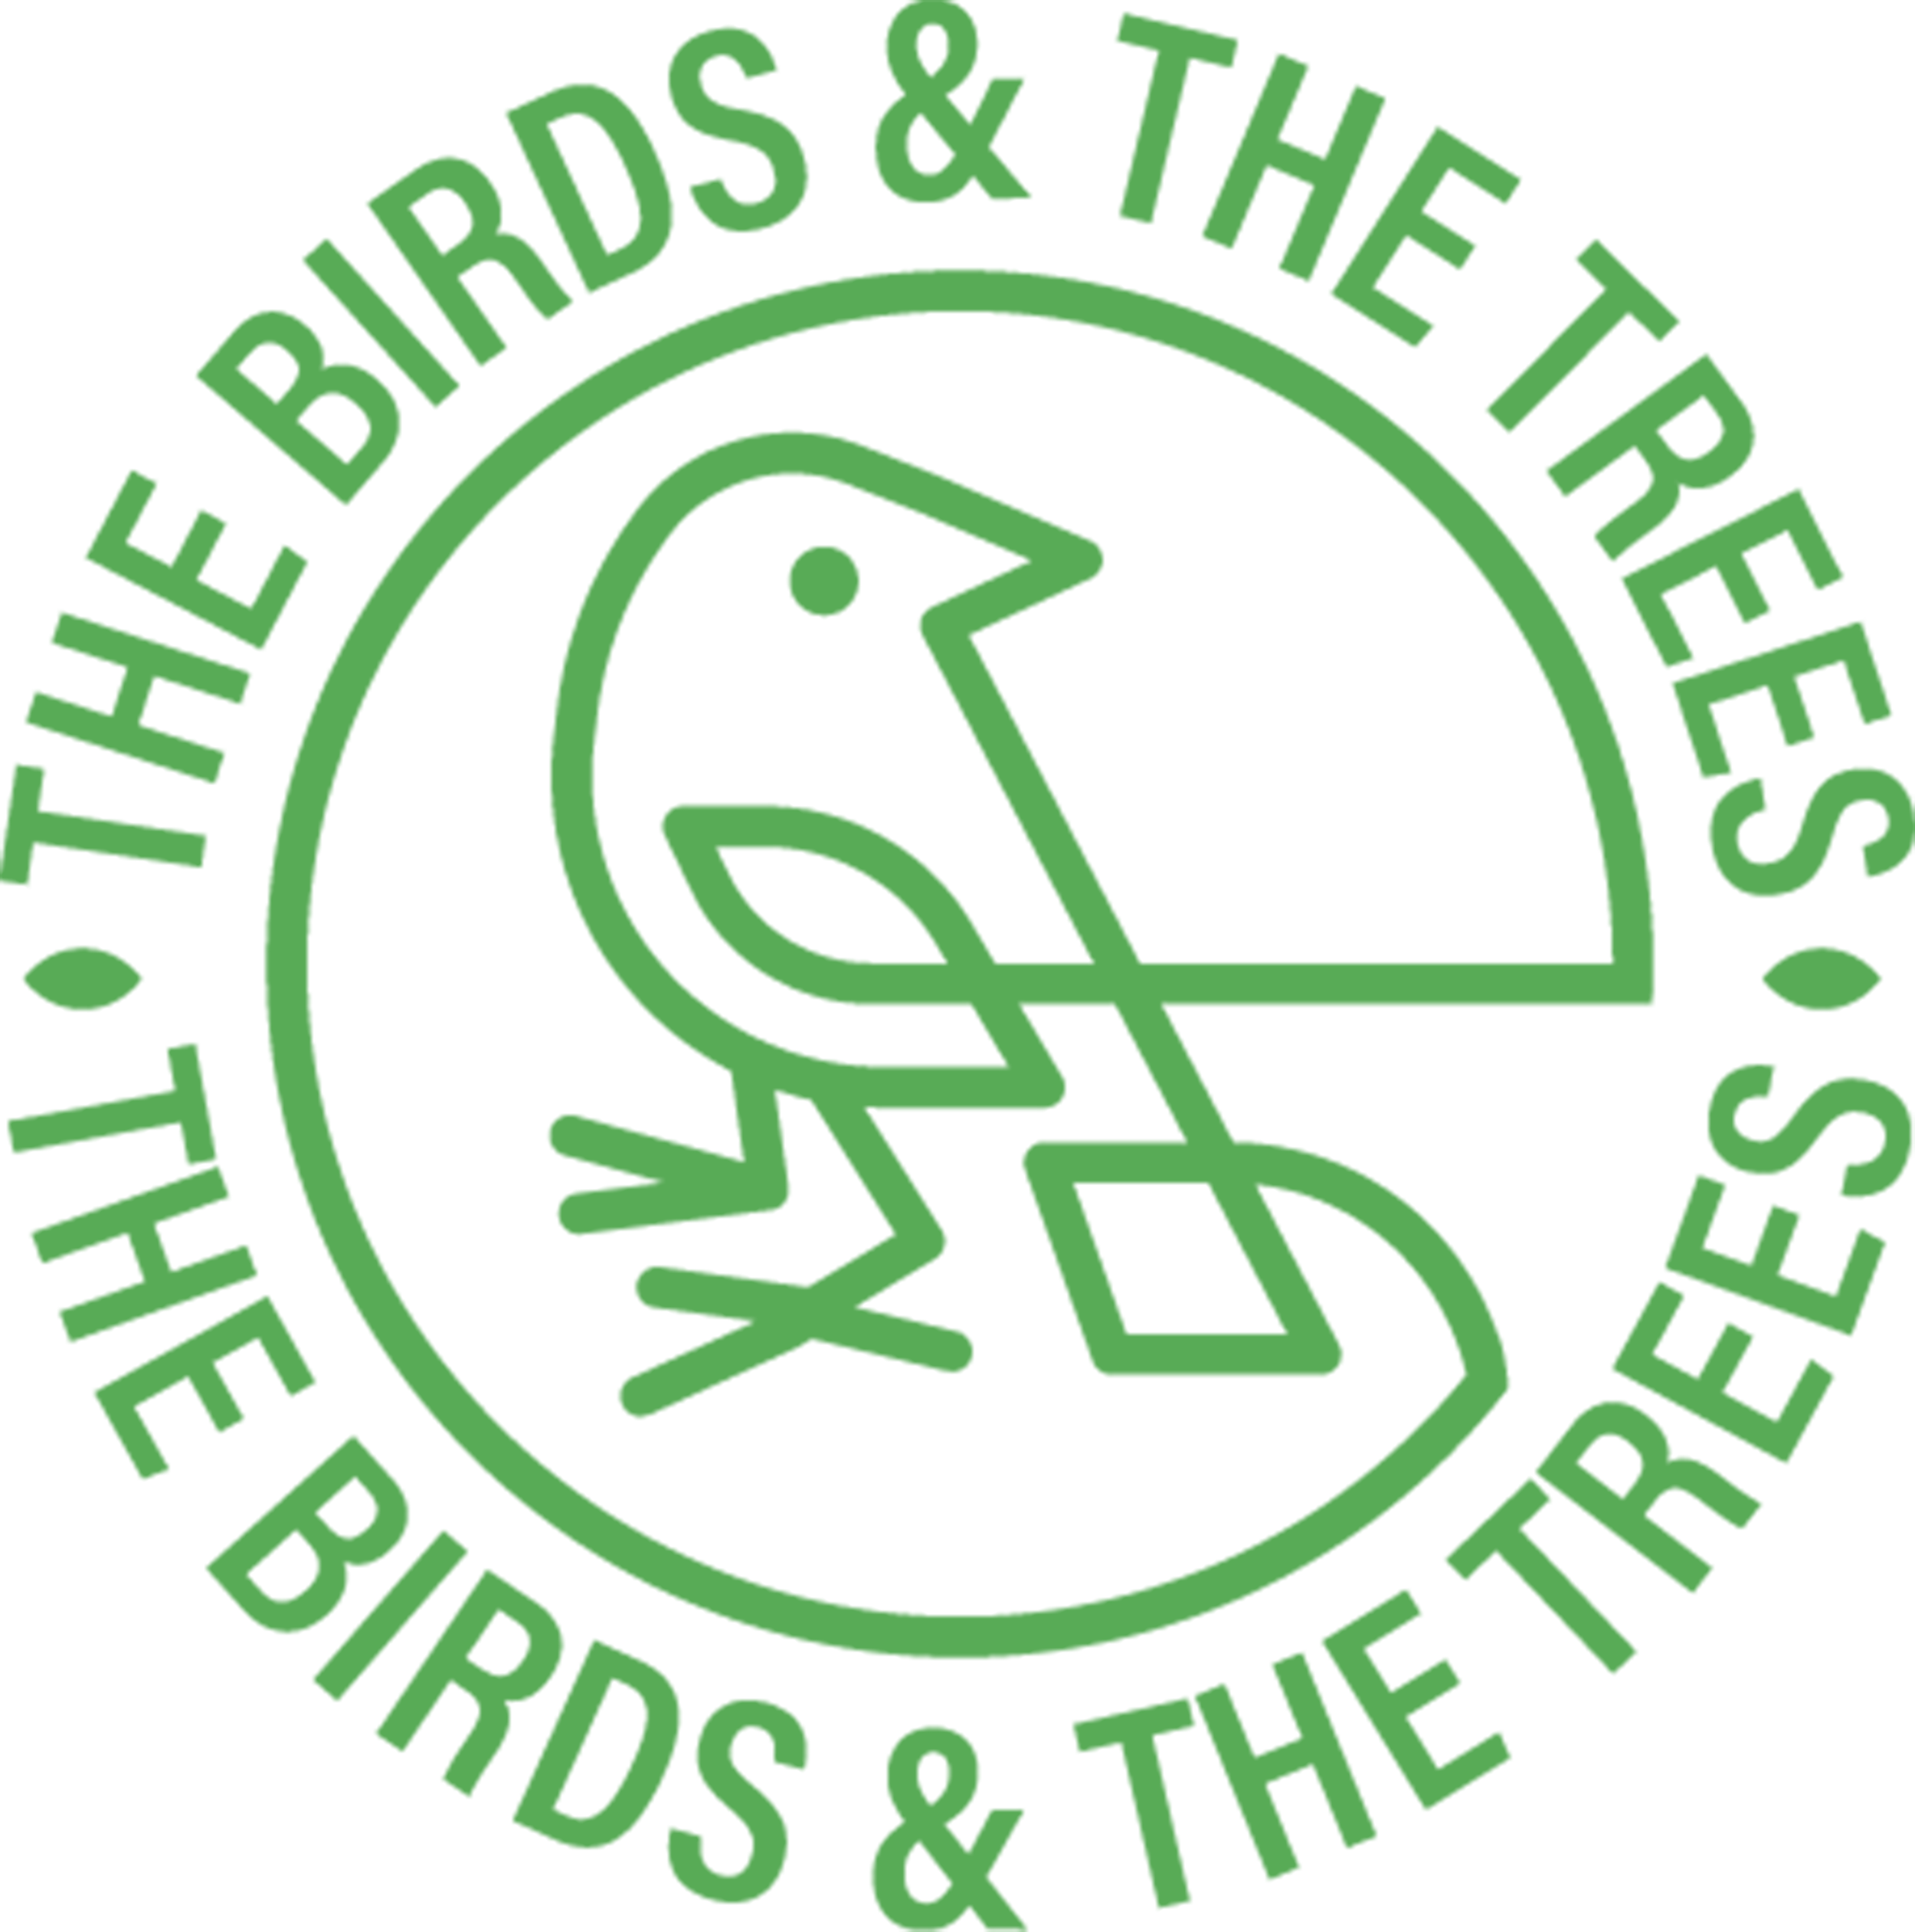 BirdsandTrees-Logo_Circle-Green.png